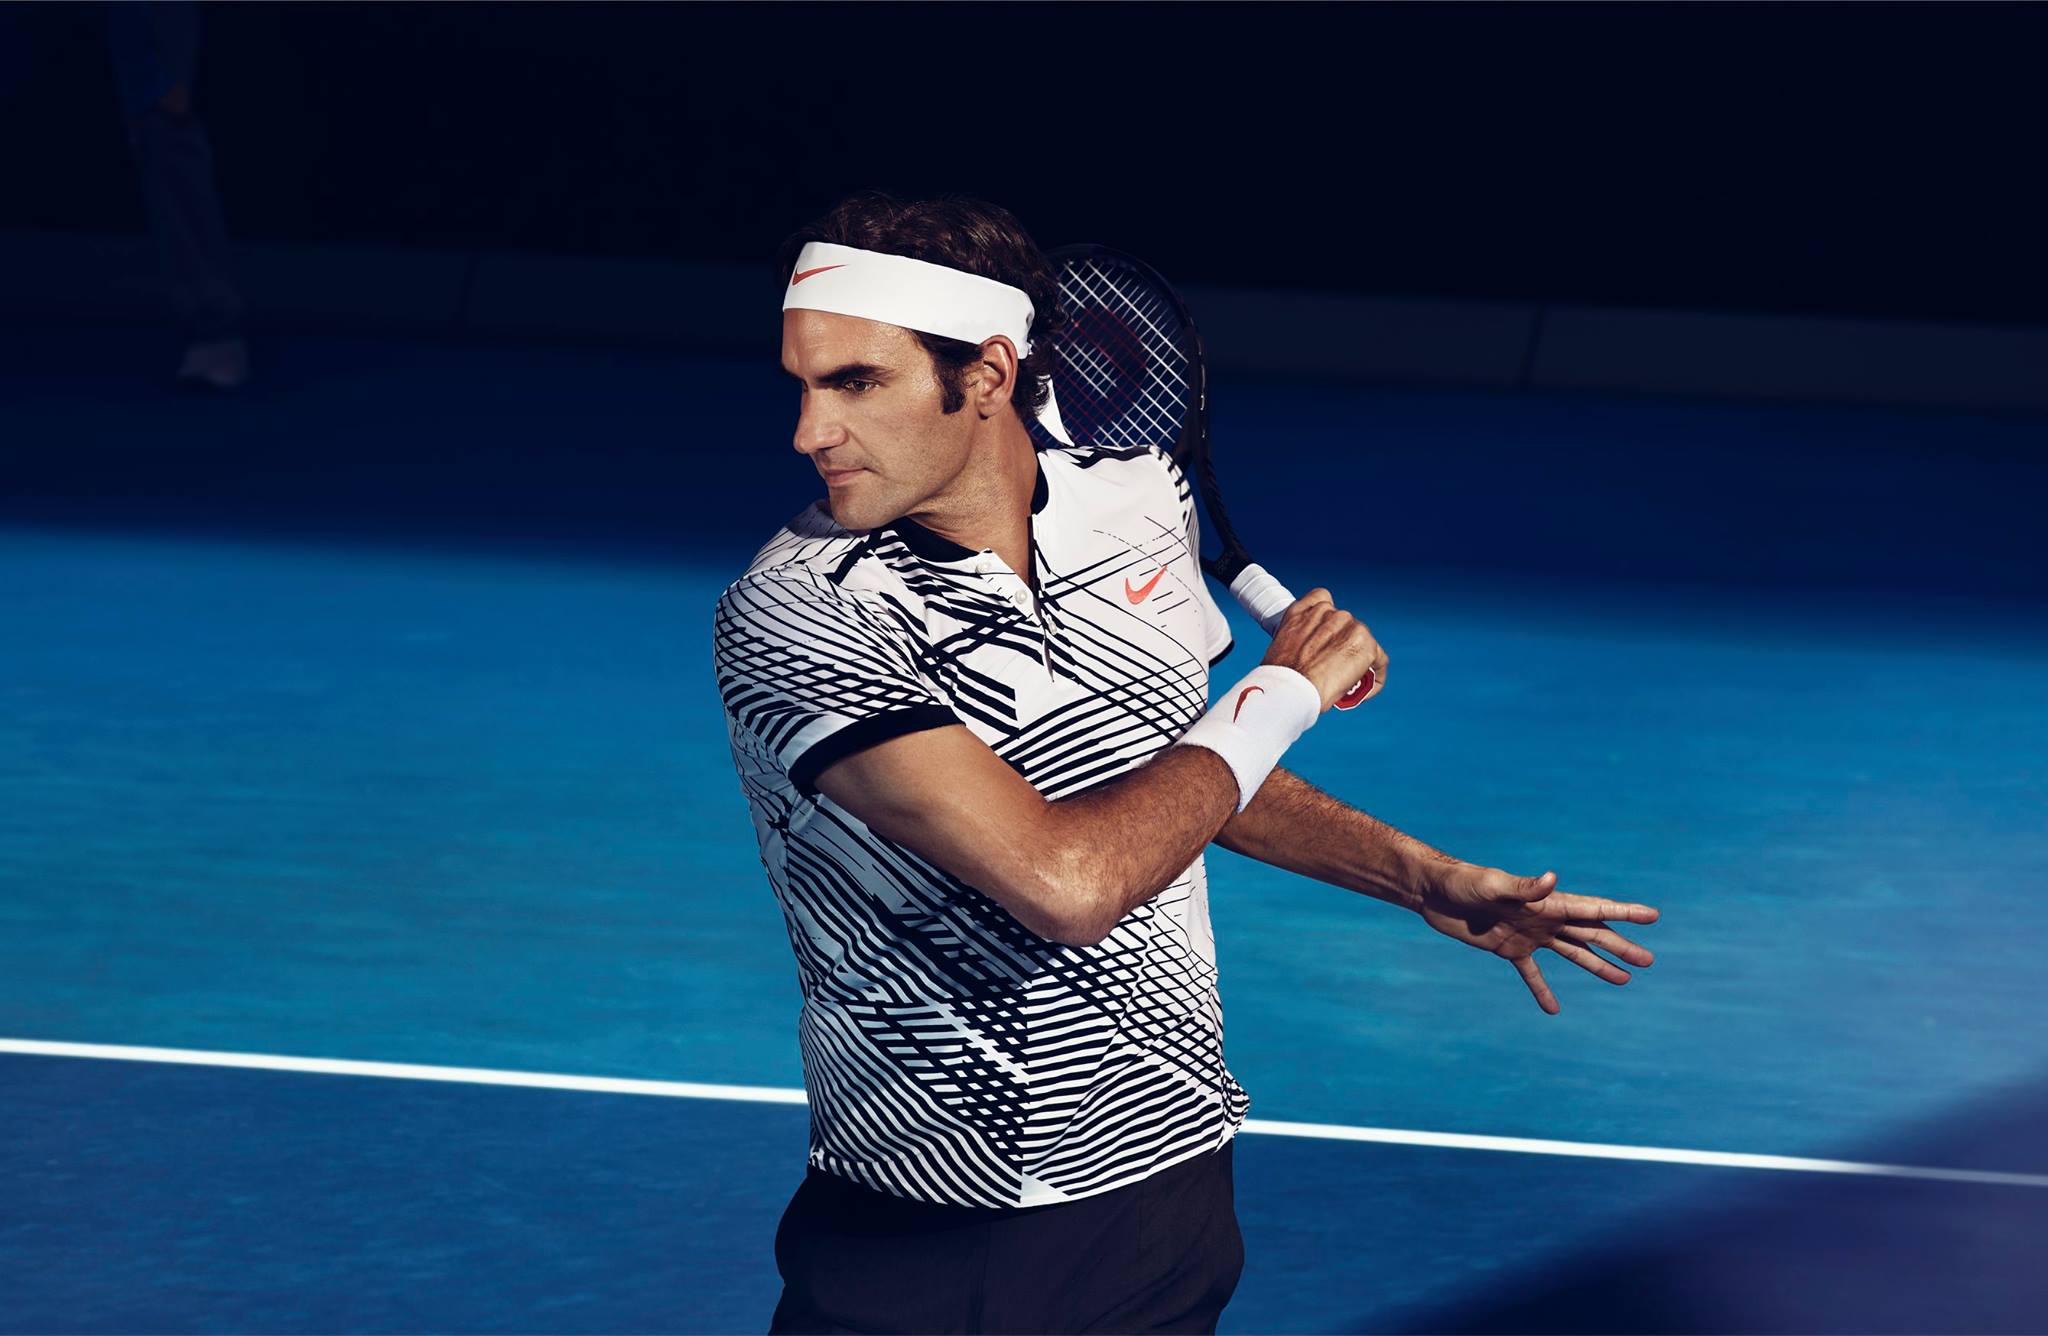 Roger Federer 2017 Australian Open Nike Outfit